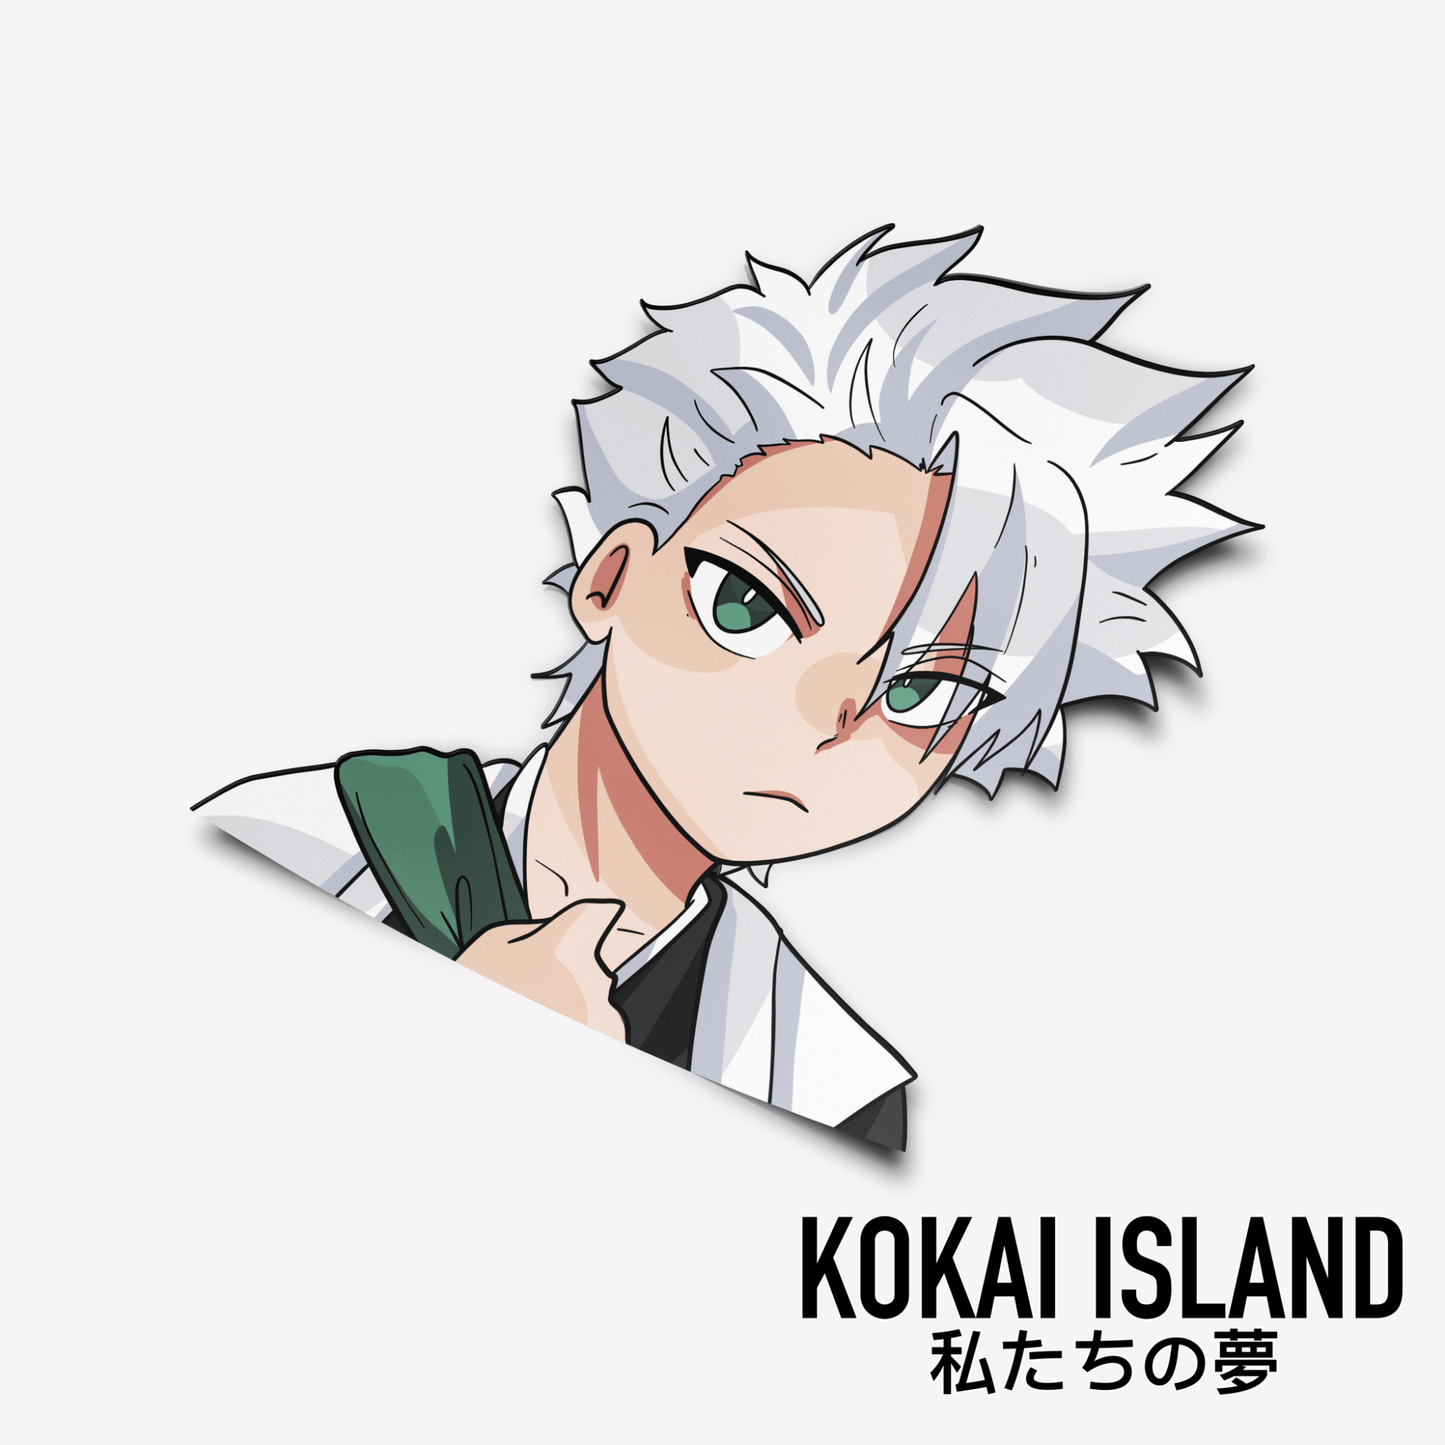 Captain White Hair DecalDecalKokai Island